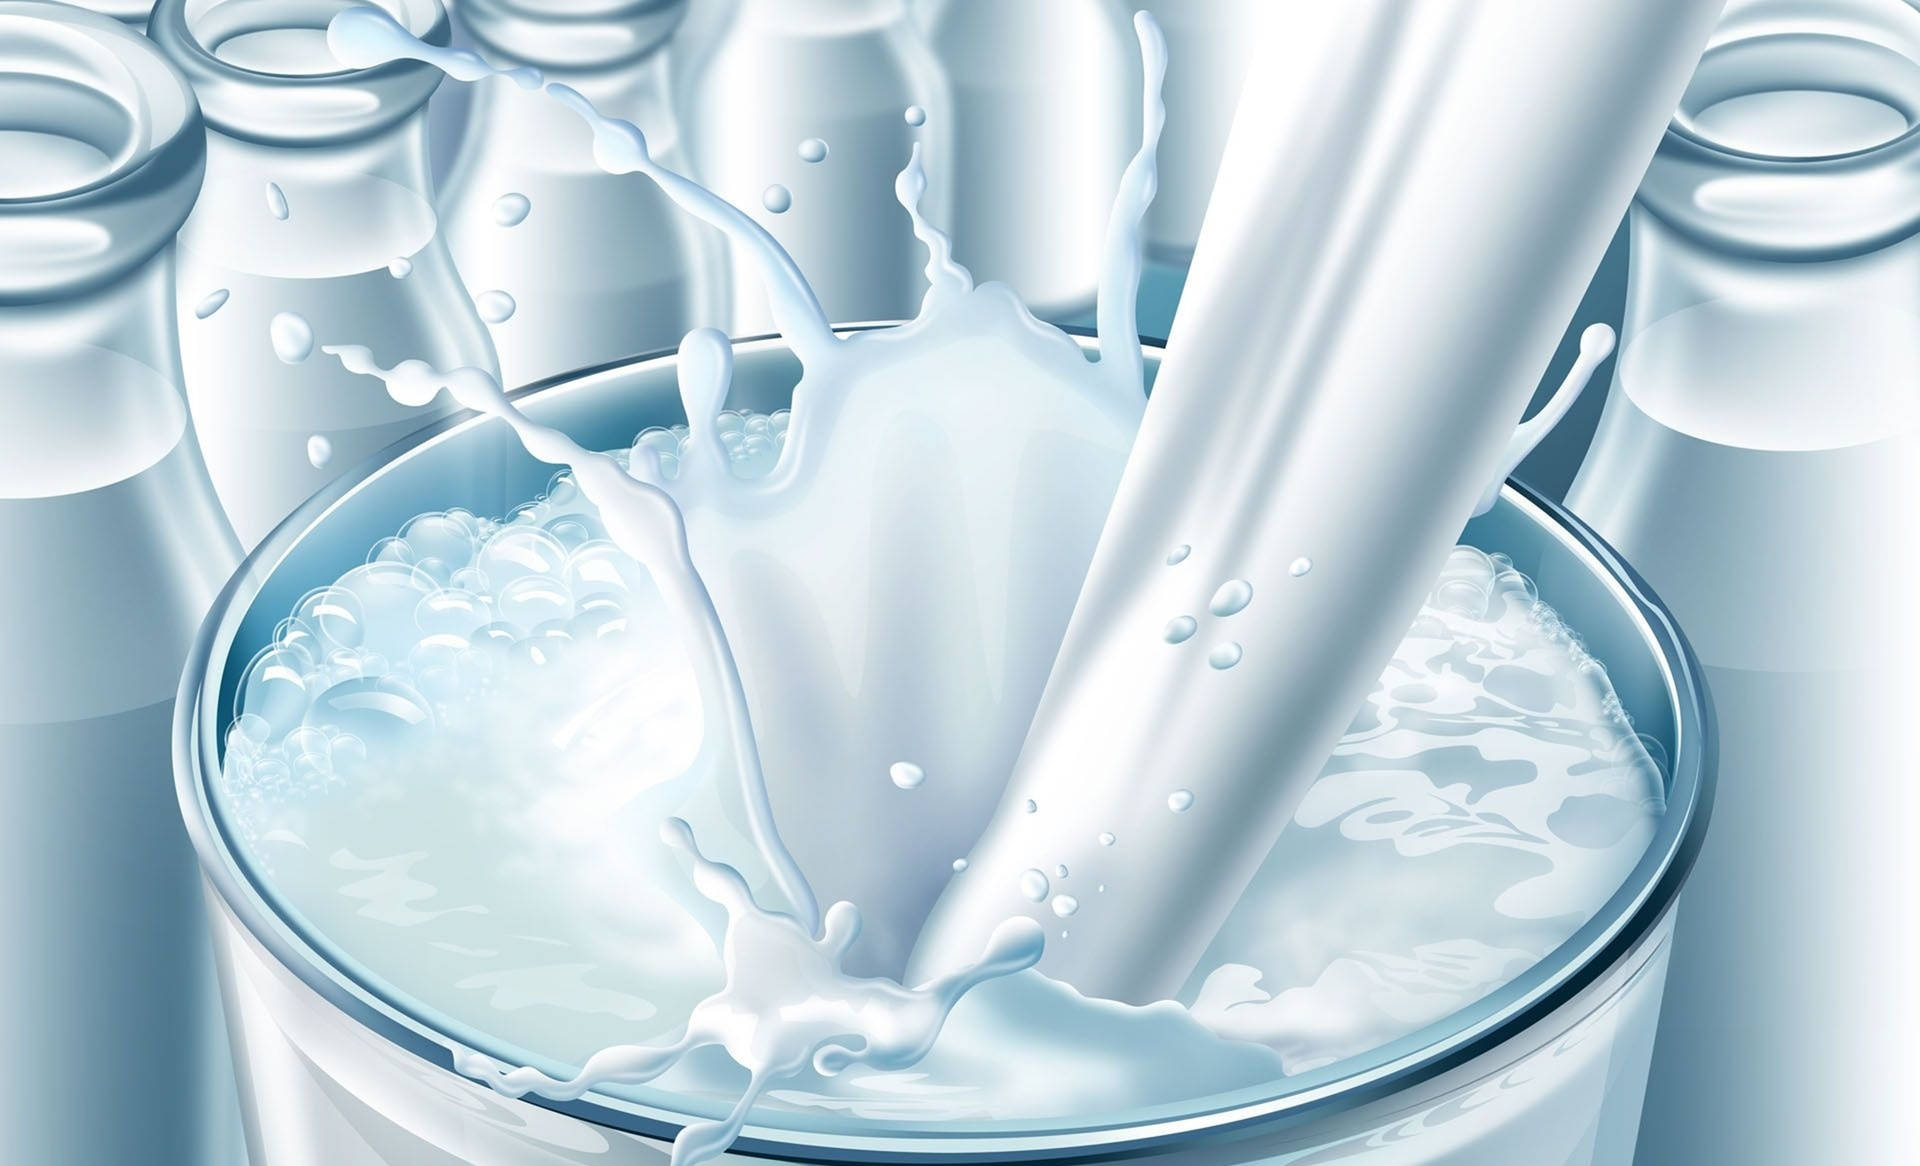 Fresh Dairy Milk In Glass Bottles